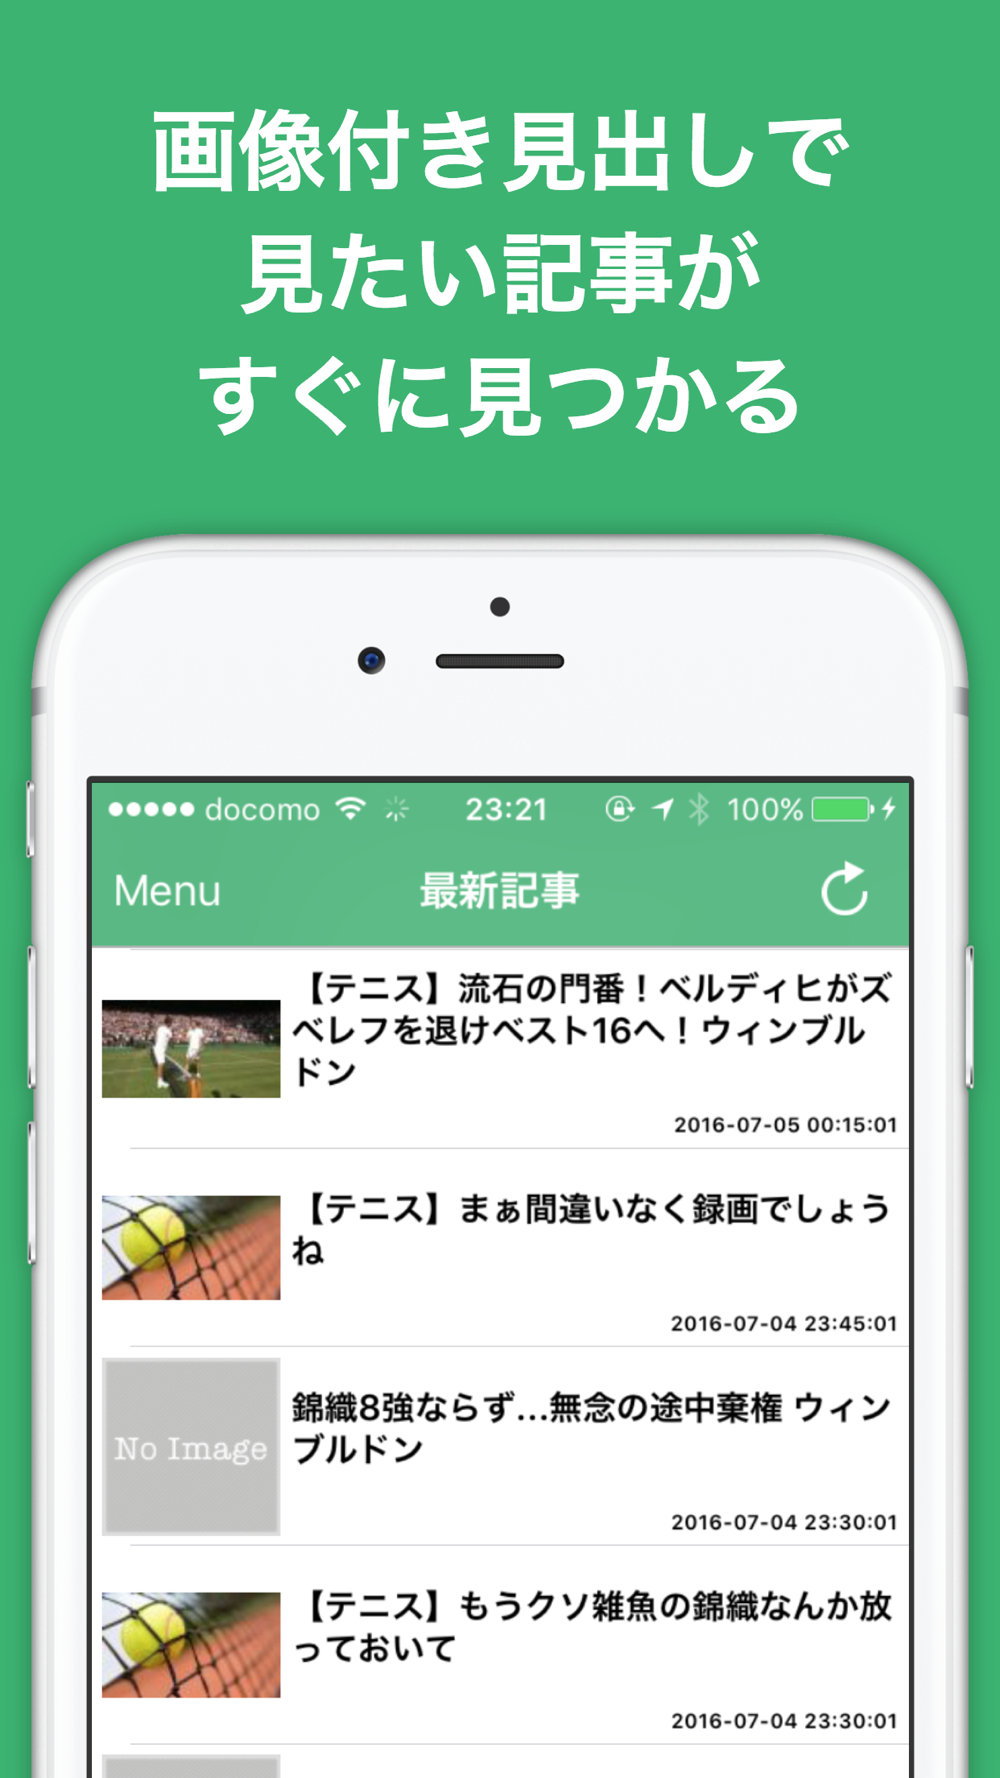 テニスのブログまとめニュース速報 Free Download App For Iphone Steprimo Com